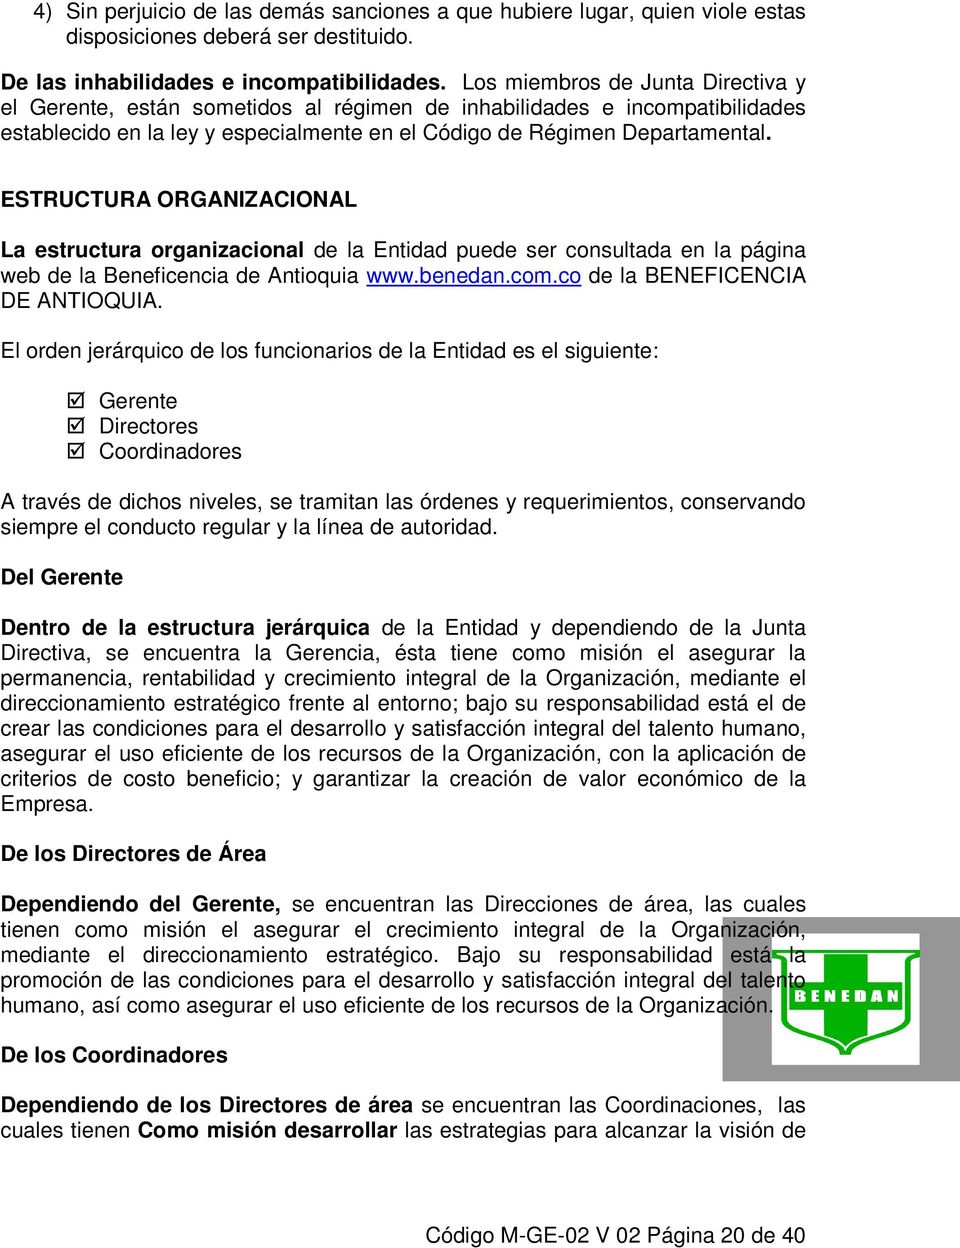 ESTRUCTURA ORGANIZACIONAL La estructura organizacional de la Entidad puede ser consultada en la página web de la Beneficencia de Antioquia www.benedan.com.co de la BENEFICENCIA DE ANTIOQUIA.